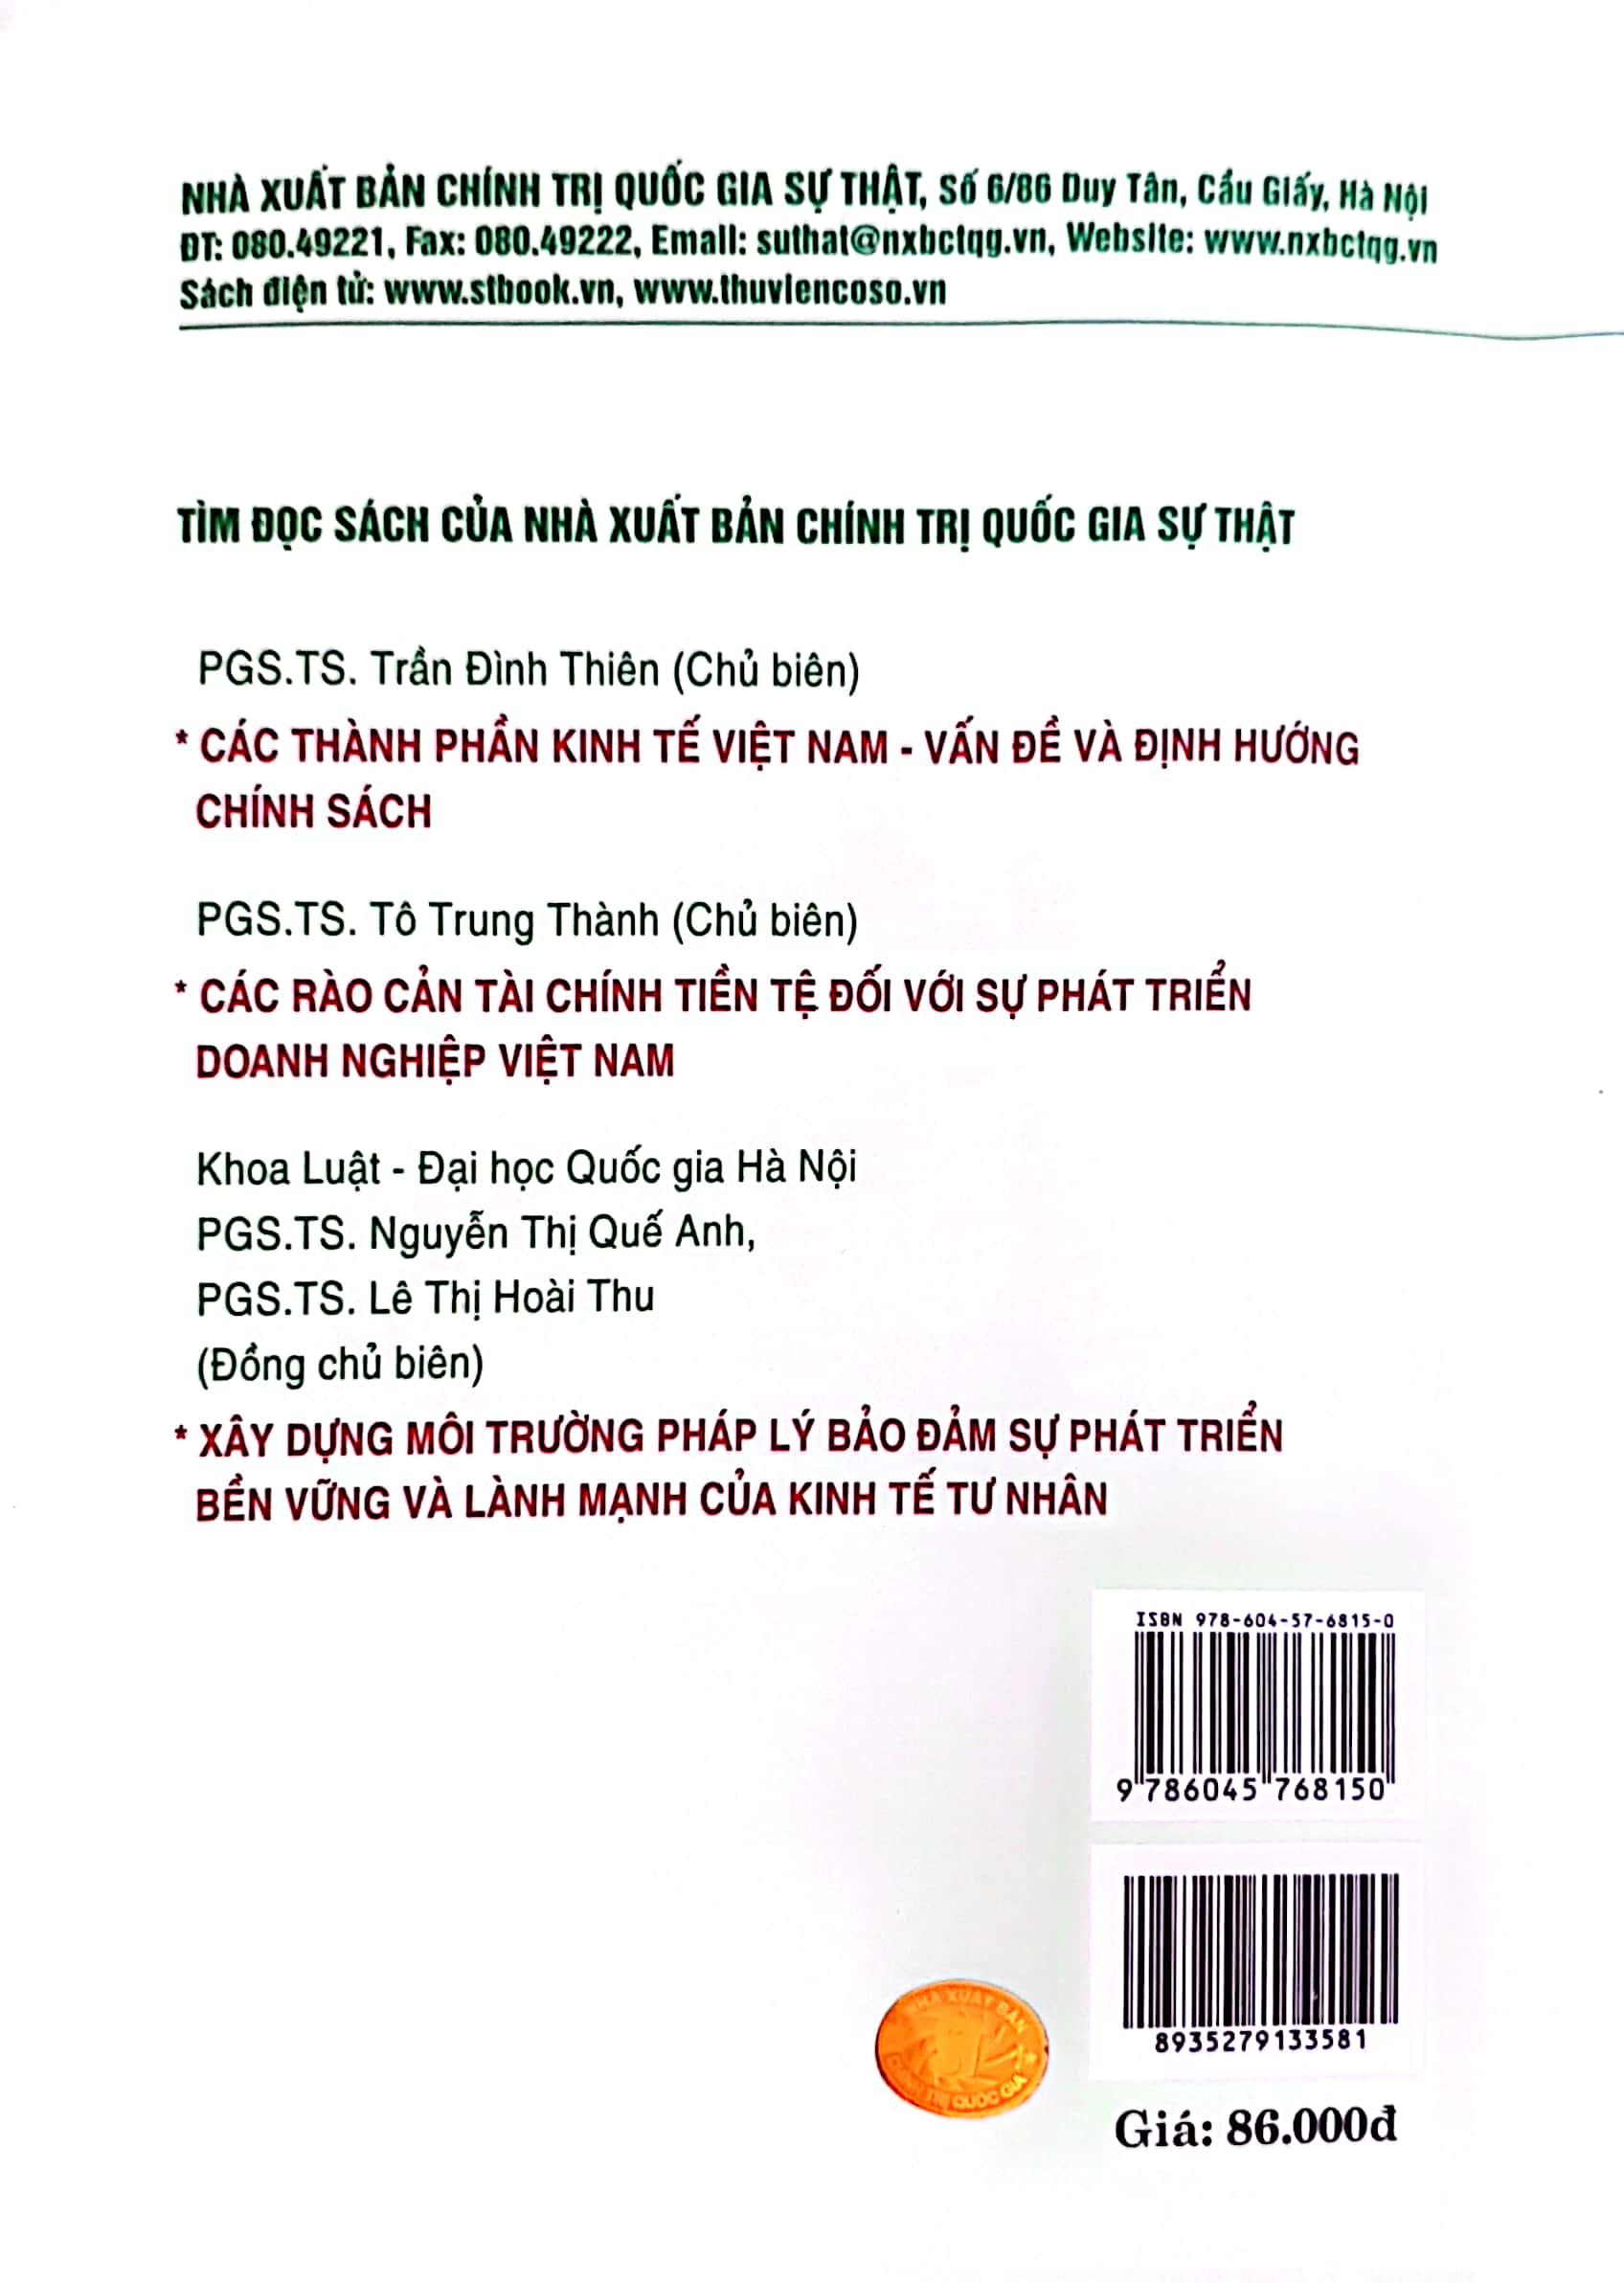 Biện pháp phi thuế quan của Việt nam đối với hàng nông sản nhập khẩu